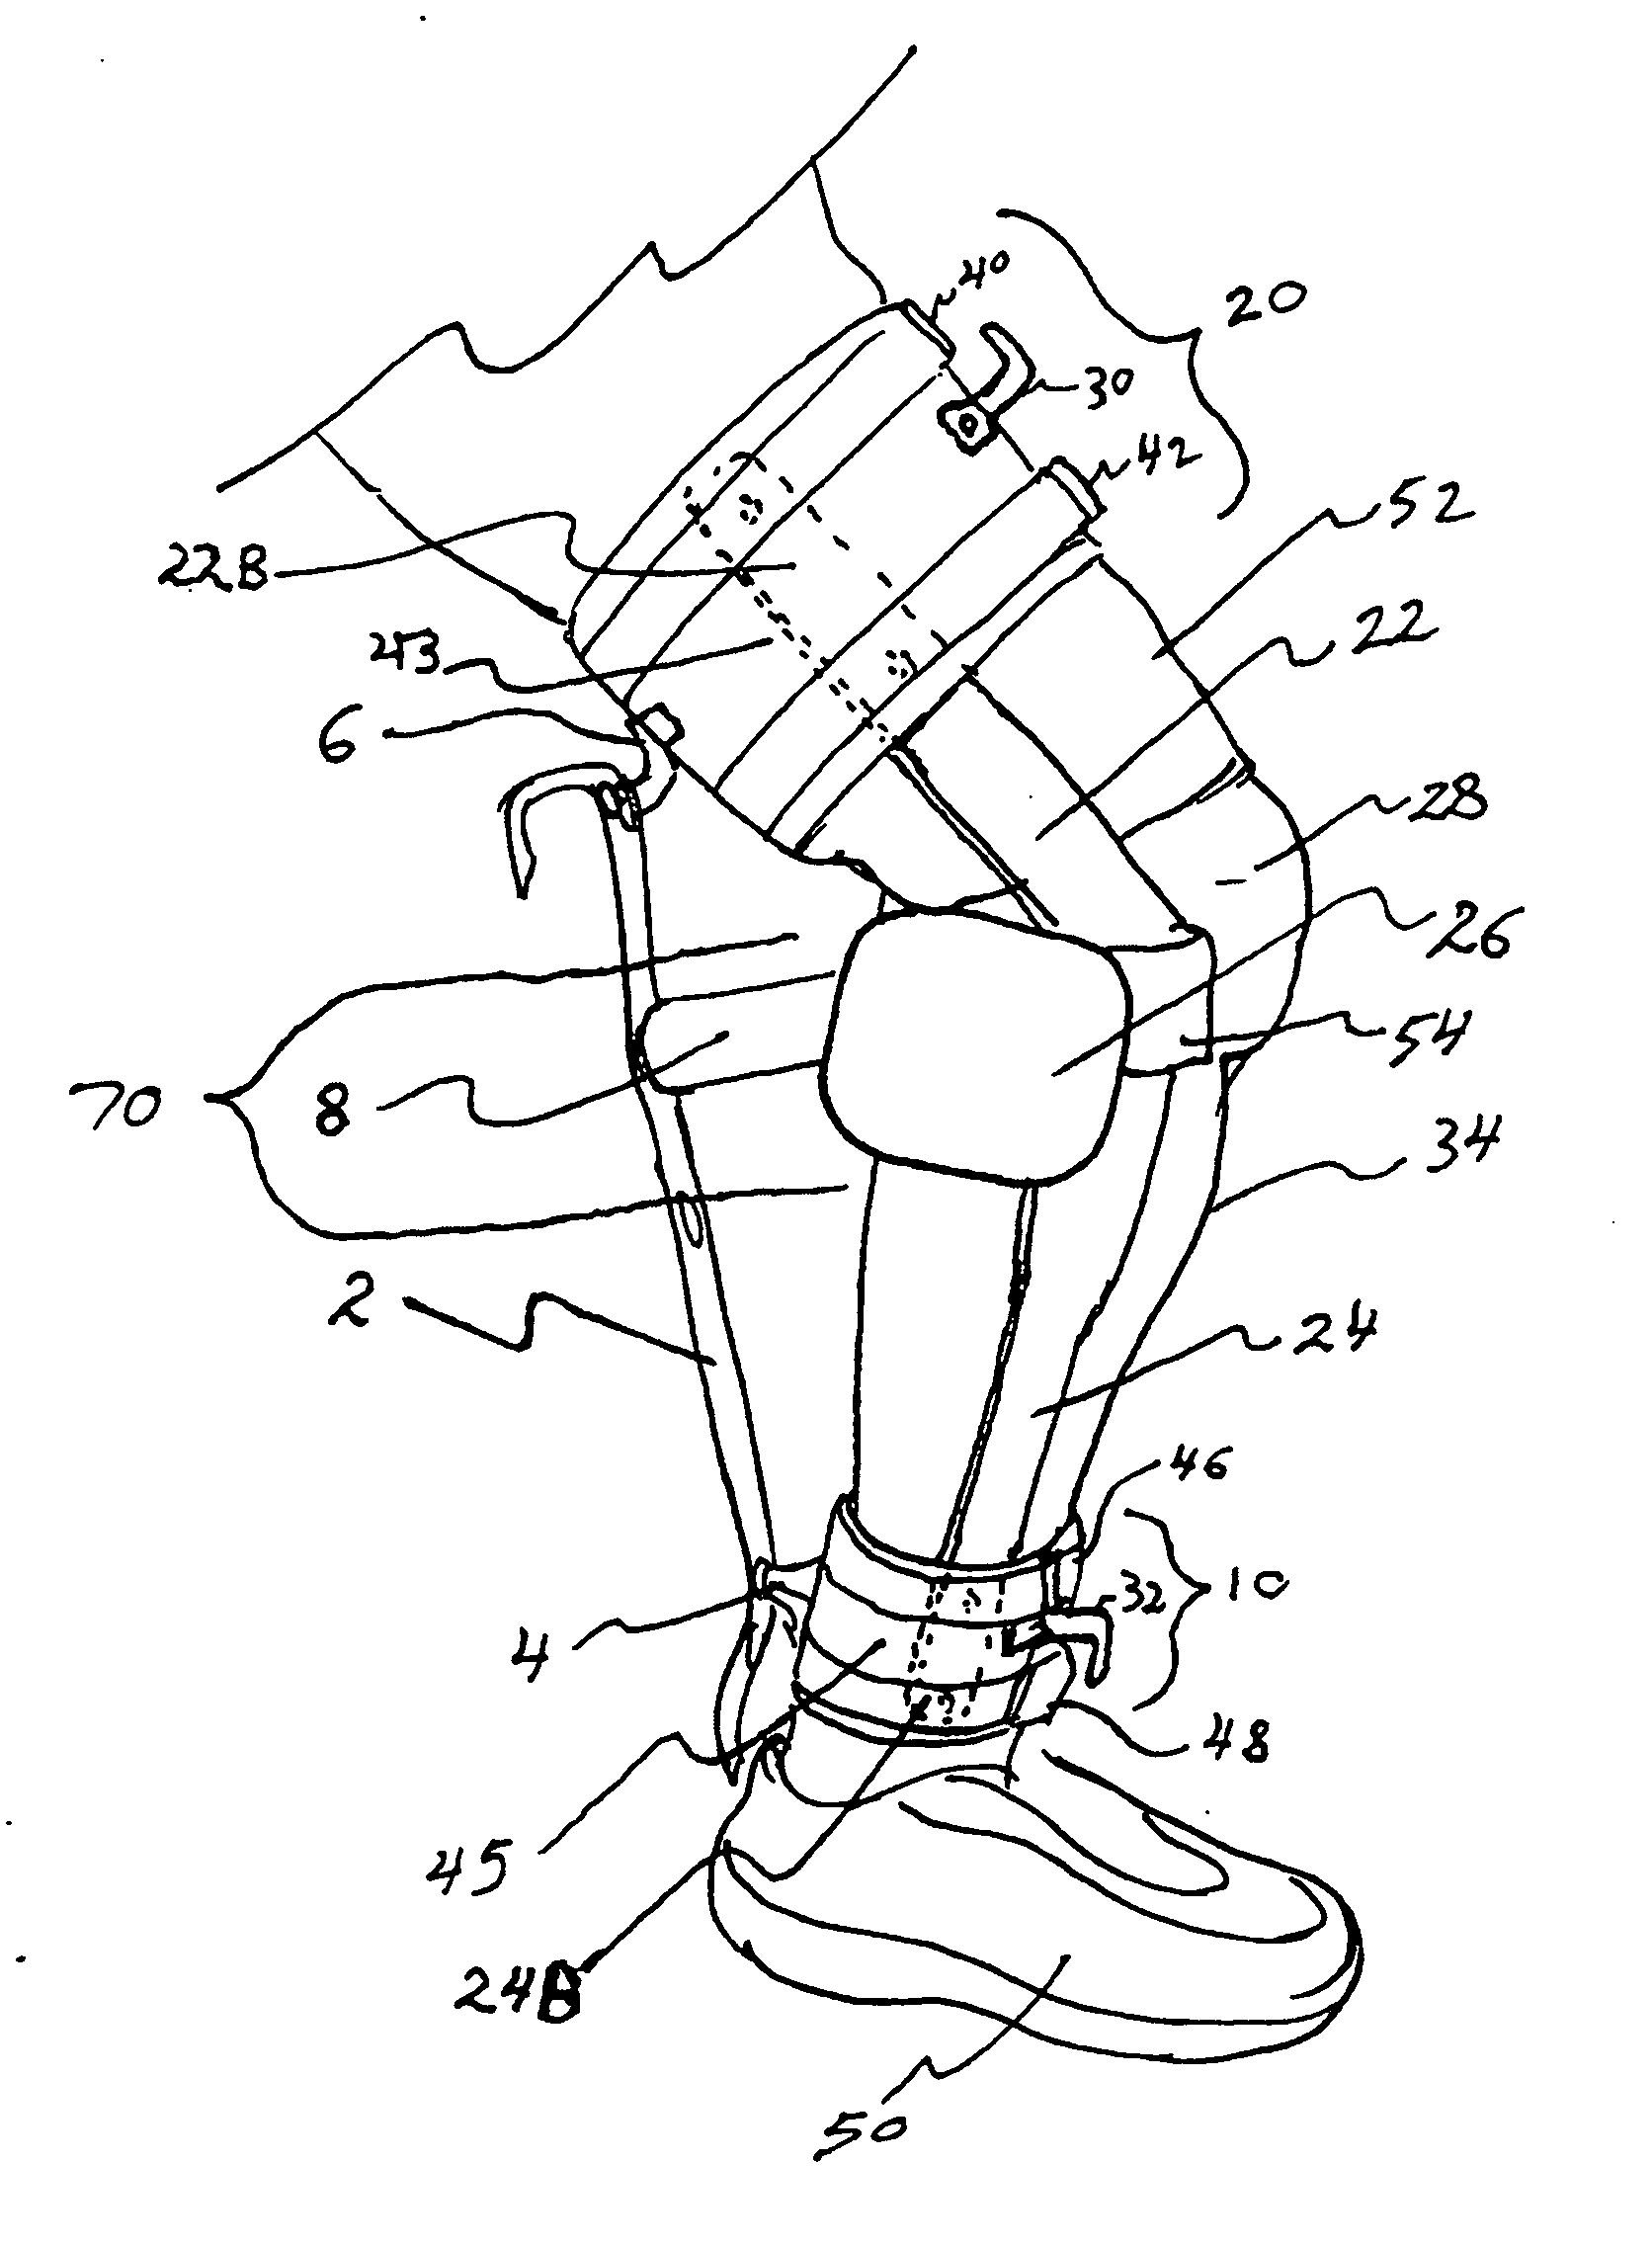 Knee Rehabilitation exercise device